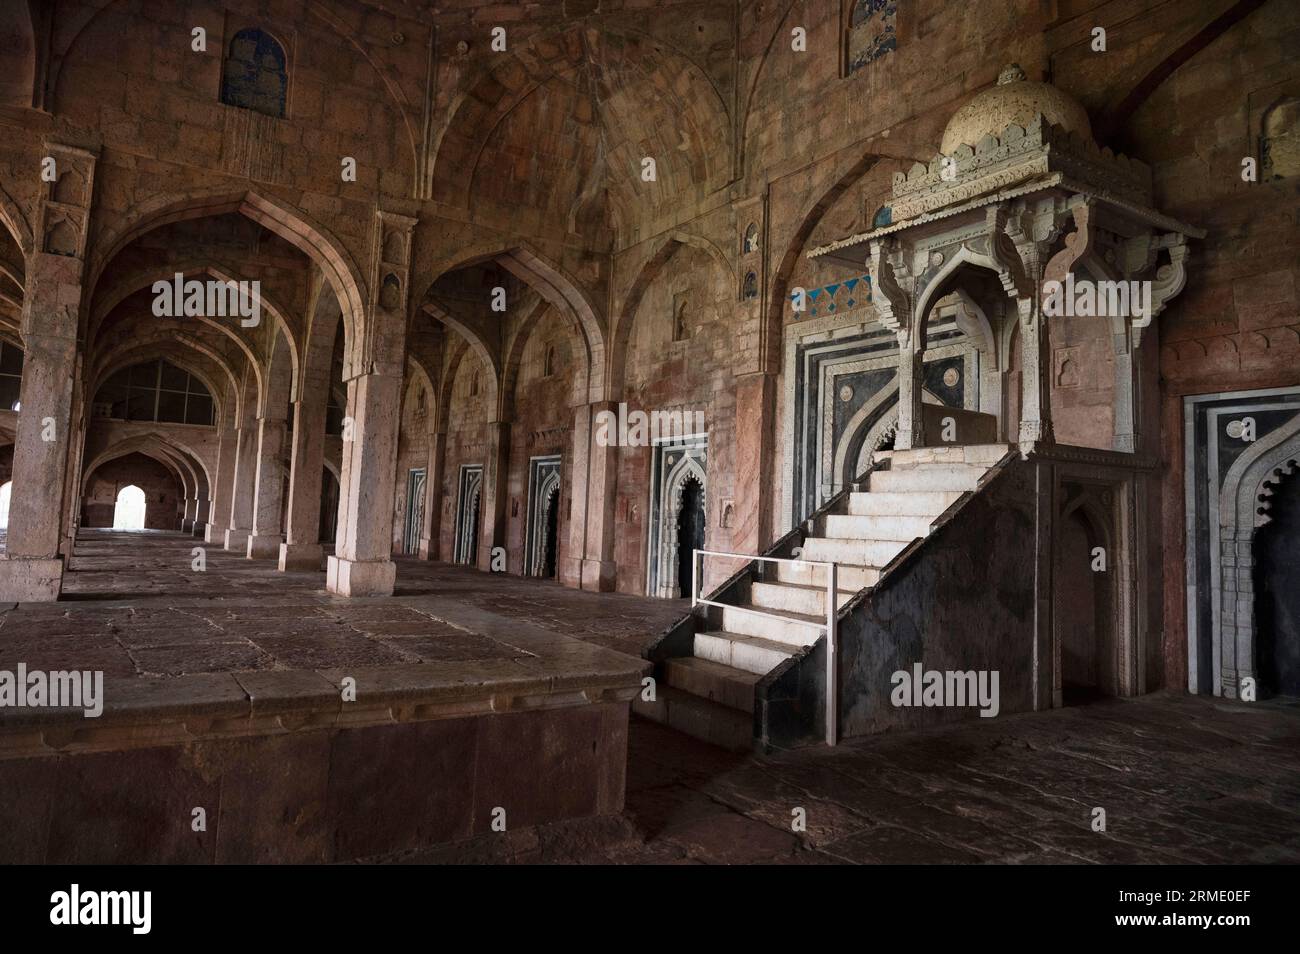 Inner view of Jama or Jami Masjid, located in Mandu, Madhya Pradesh, India Stock Photo